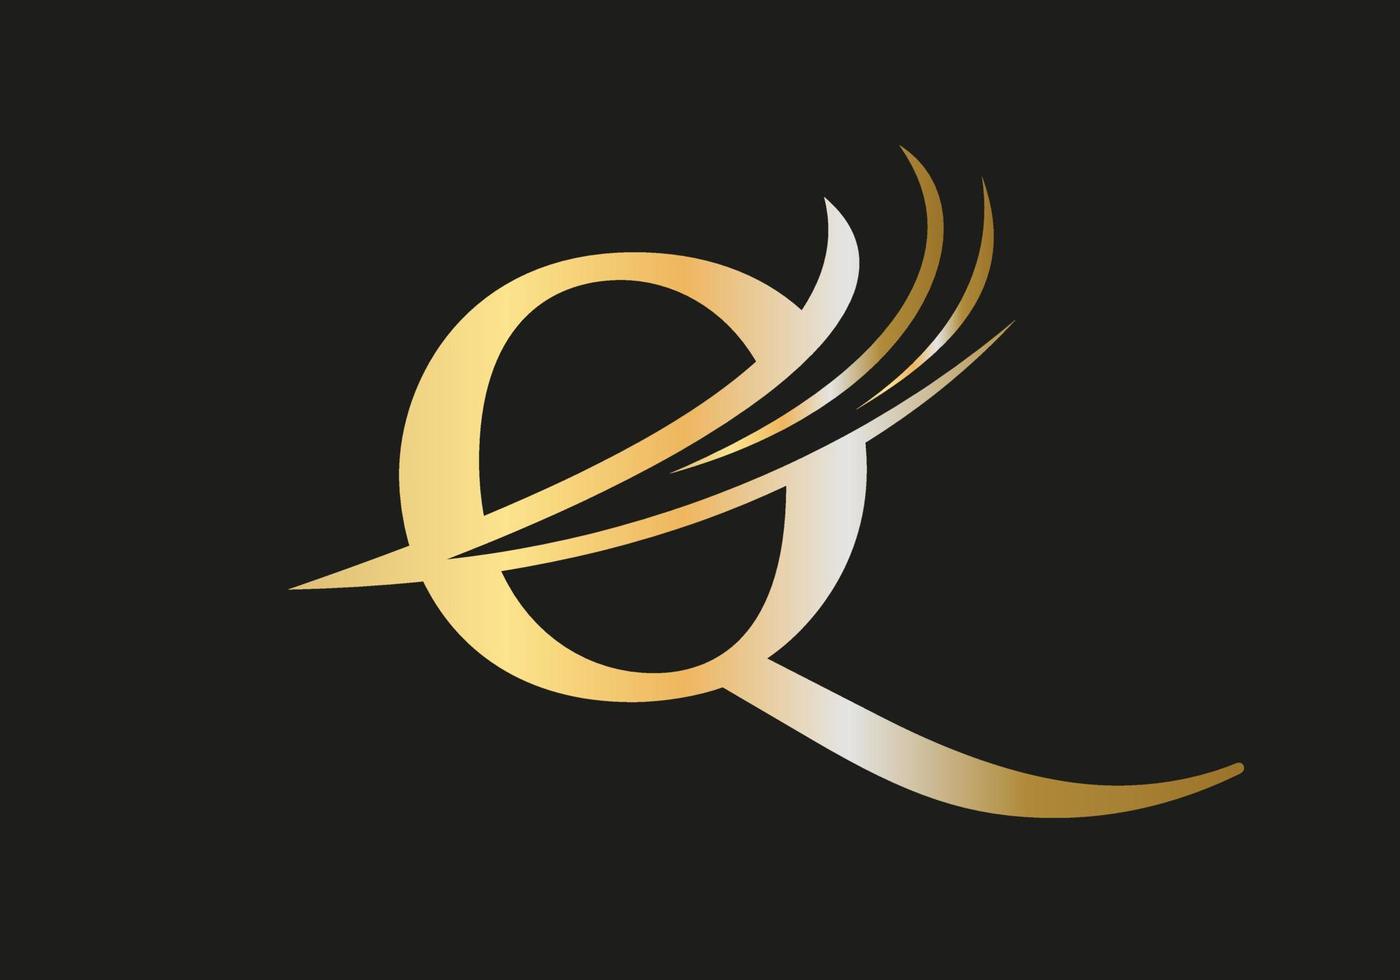 Monogram Q logo design vector template